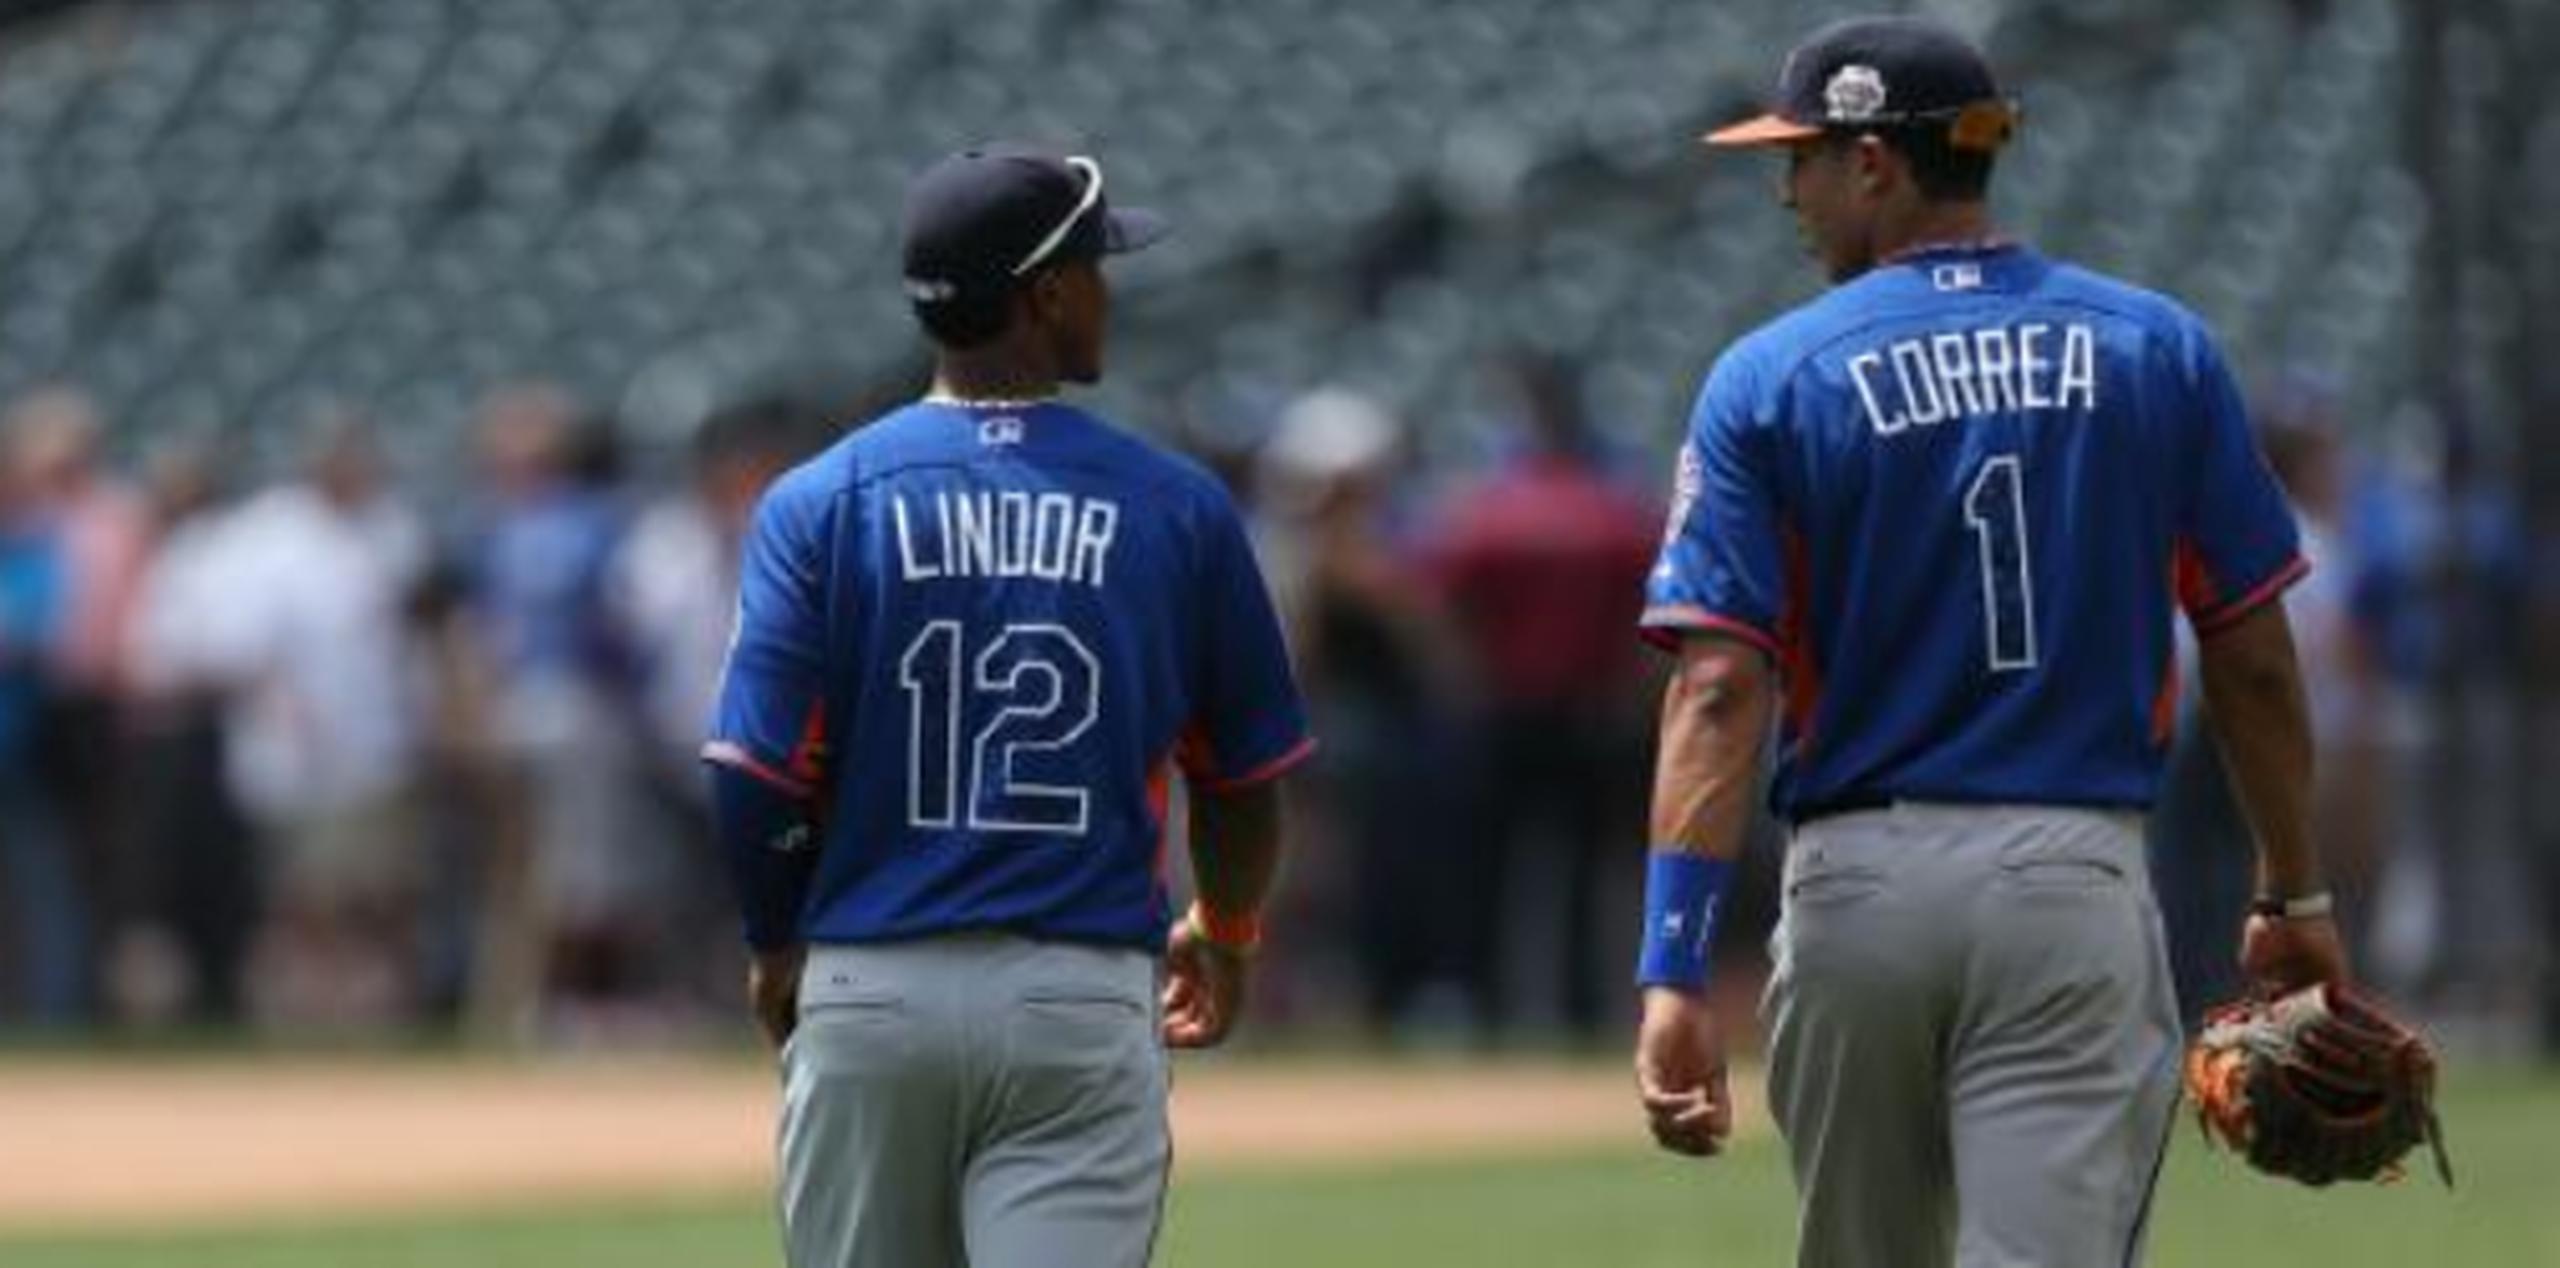 Ambos Correa y Lindor serán elegibles a arbitrajes salariales por primera vez en la venidera temporada. (Archivo)